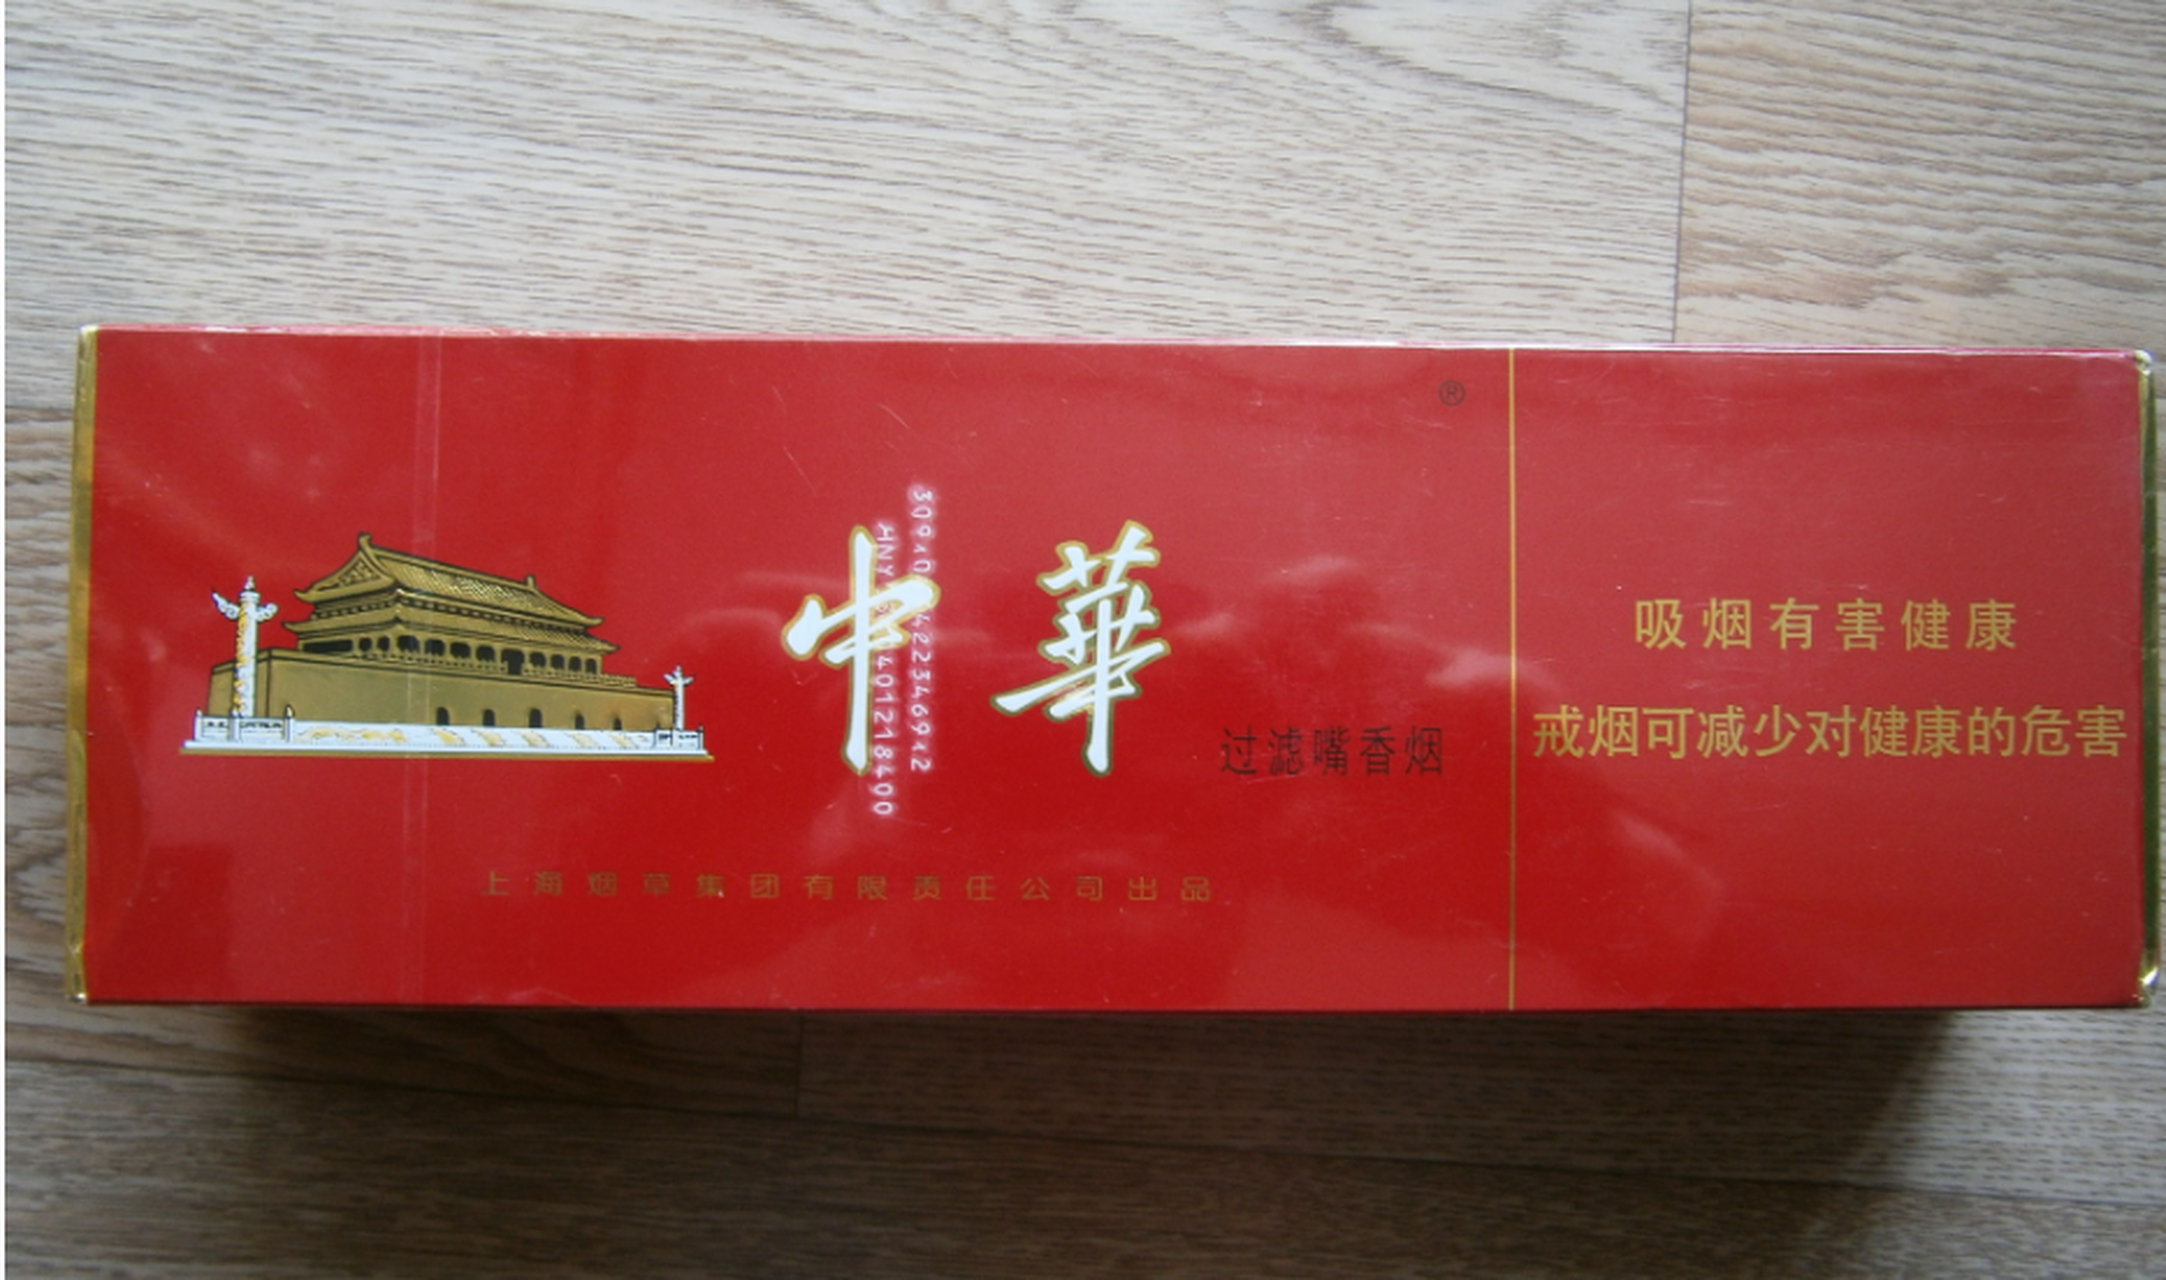 我和老公从杭州回来看望外公,特地买了两瓶国窖1573和一条中华烟,当